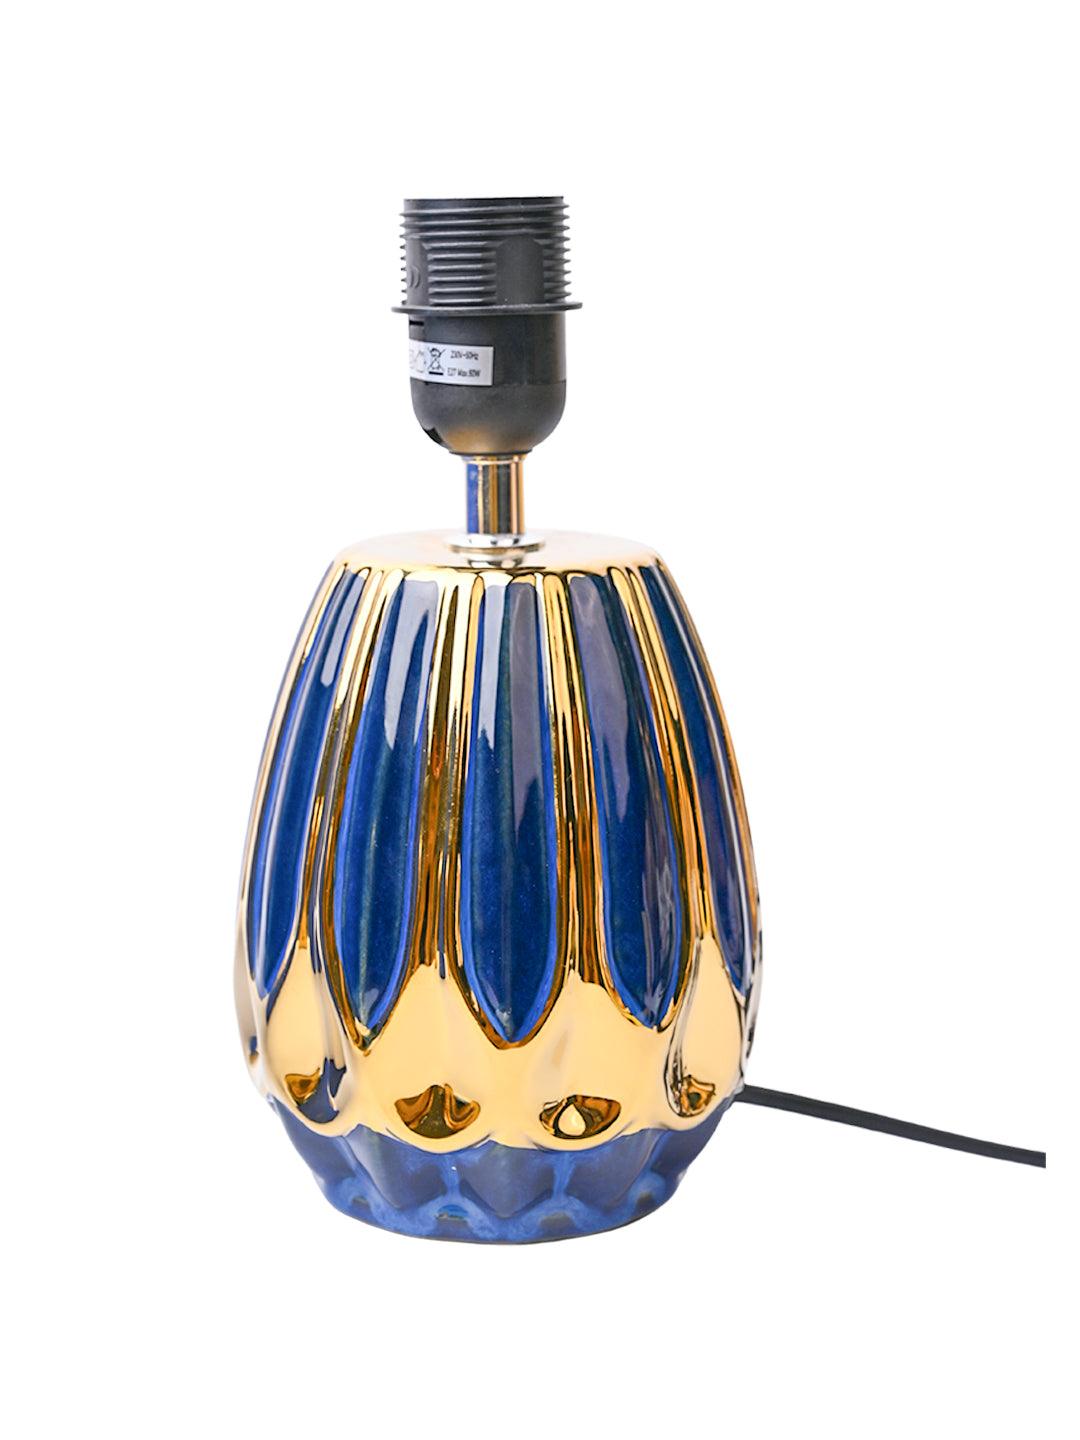 Stylish Blue Shade Table Lamp - MARKET99